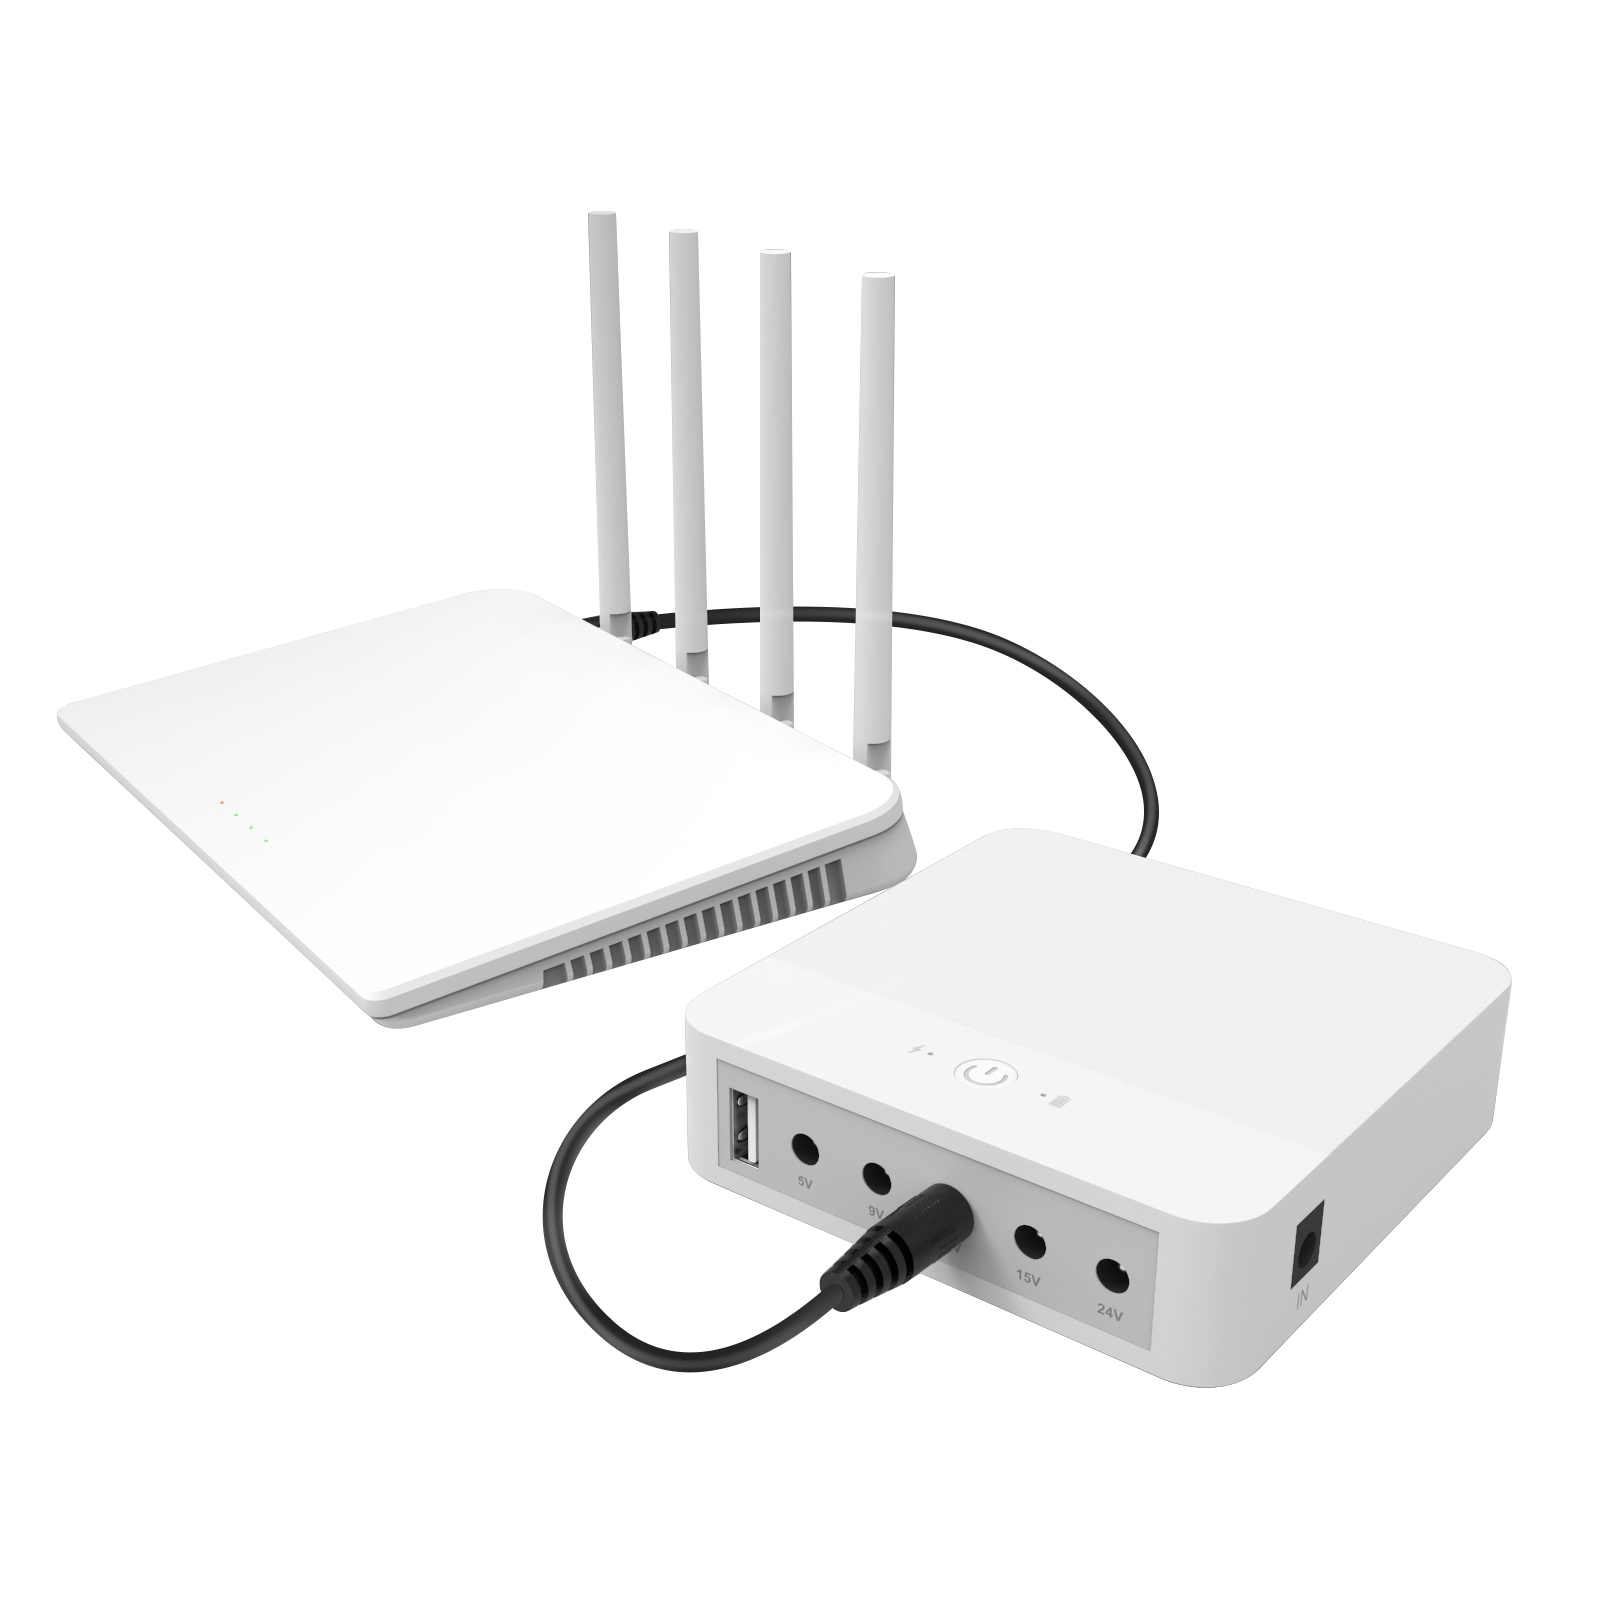 WGP ntse mini ups rau WiFi router tsis tawg 12V